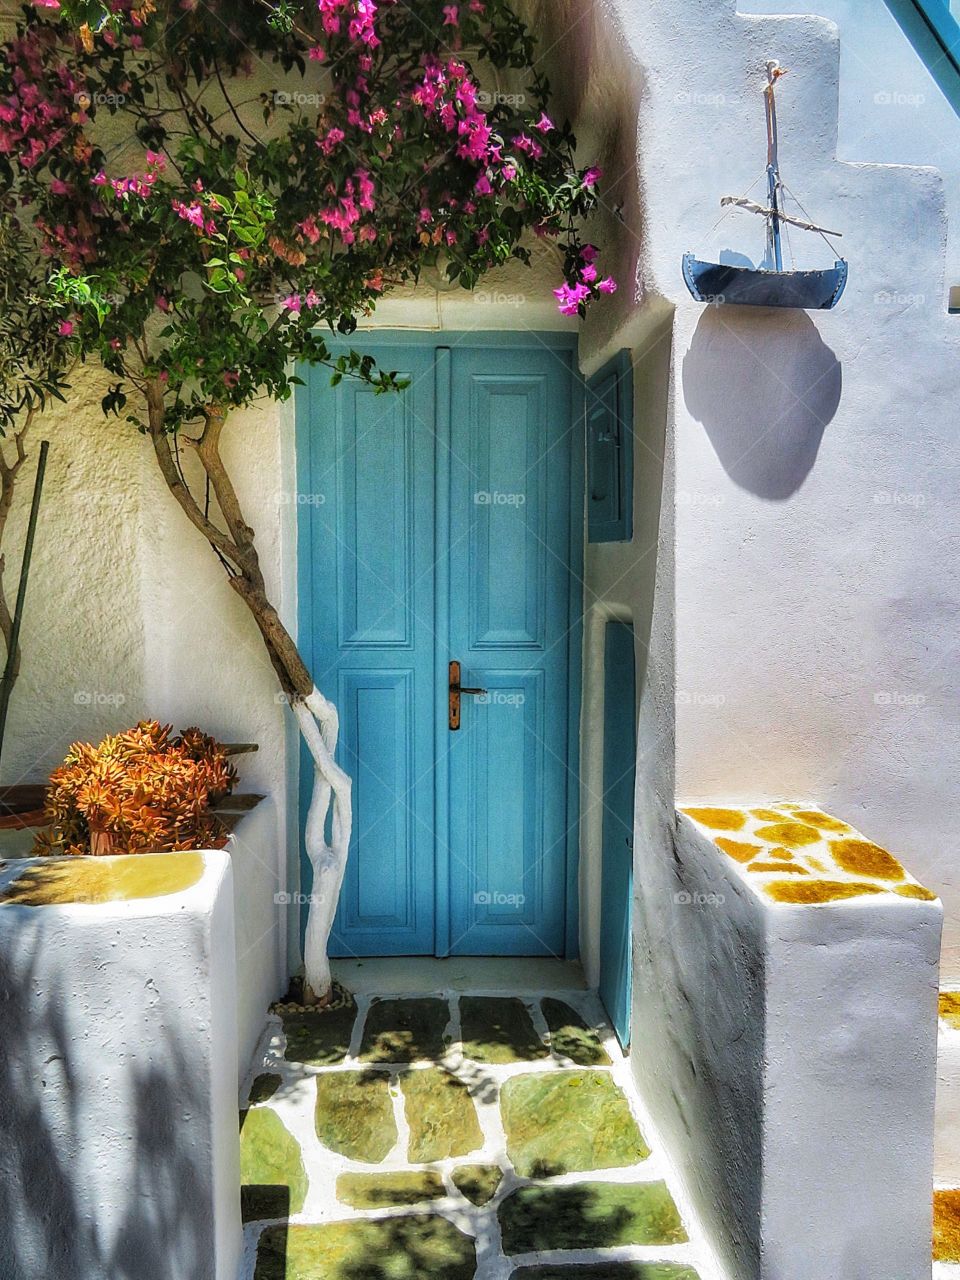 Folegandros - door in Village of Chora